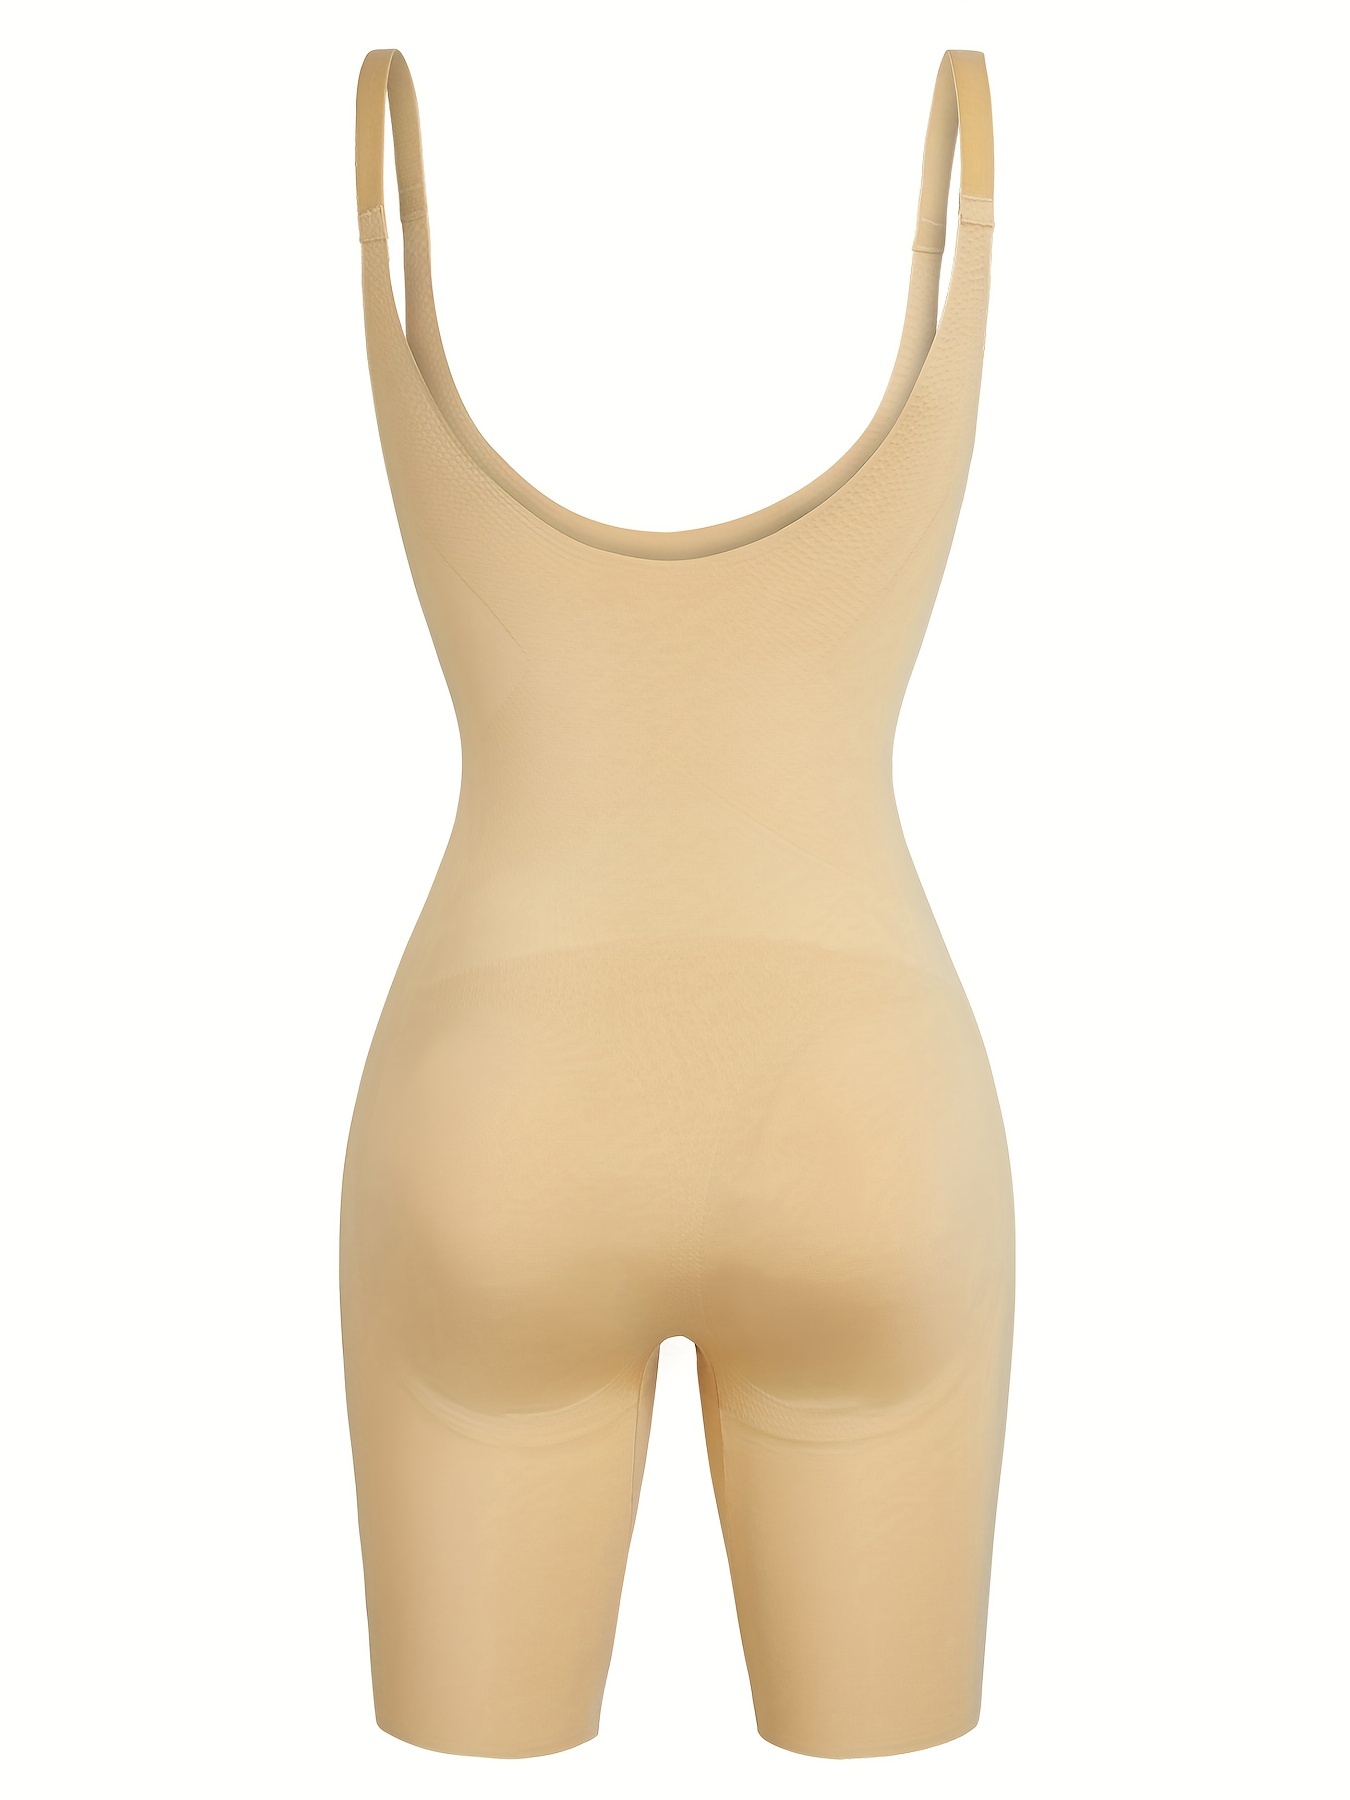 Buy Franato Women's Open Bust Bodysuit Firm Control Shapewear Body